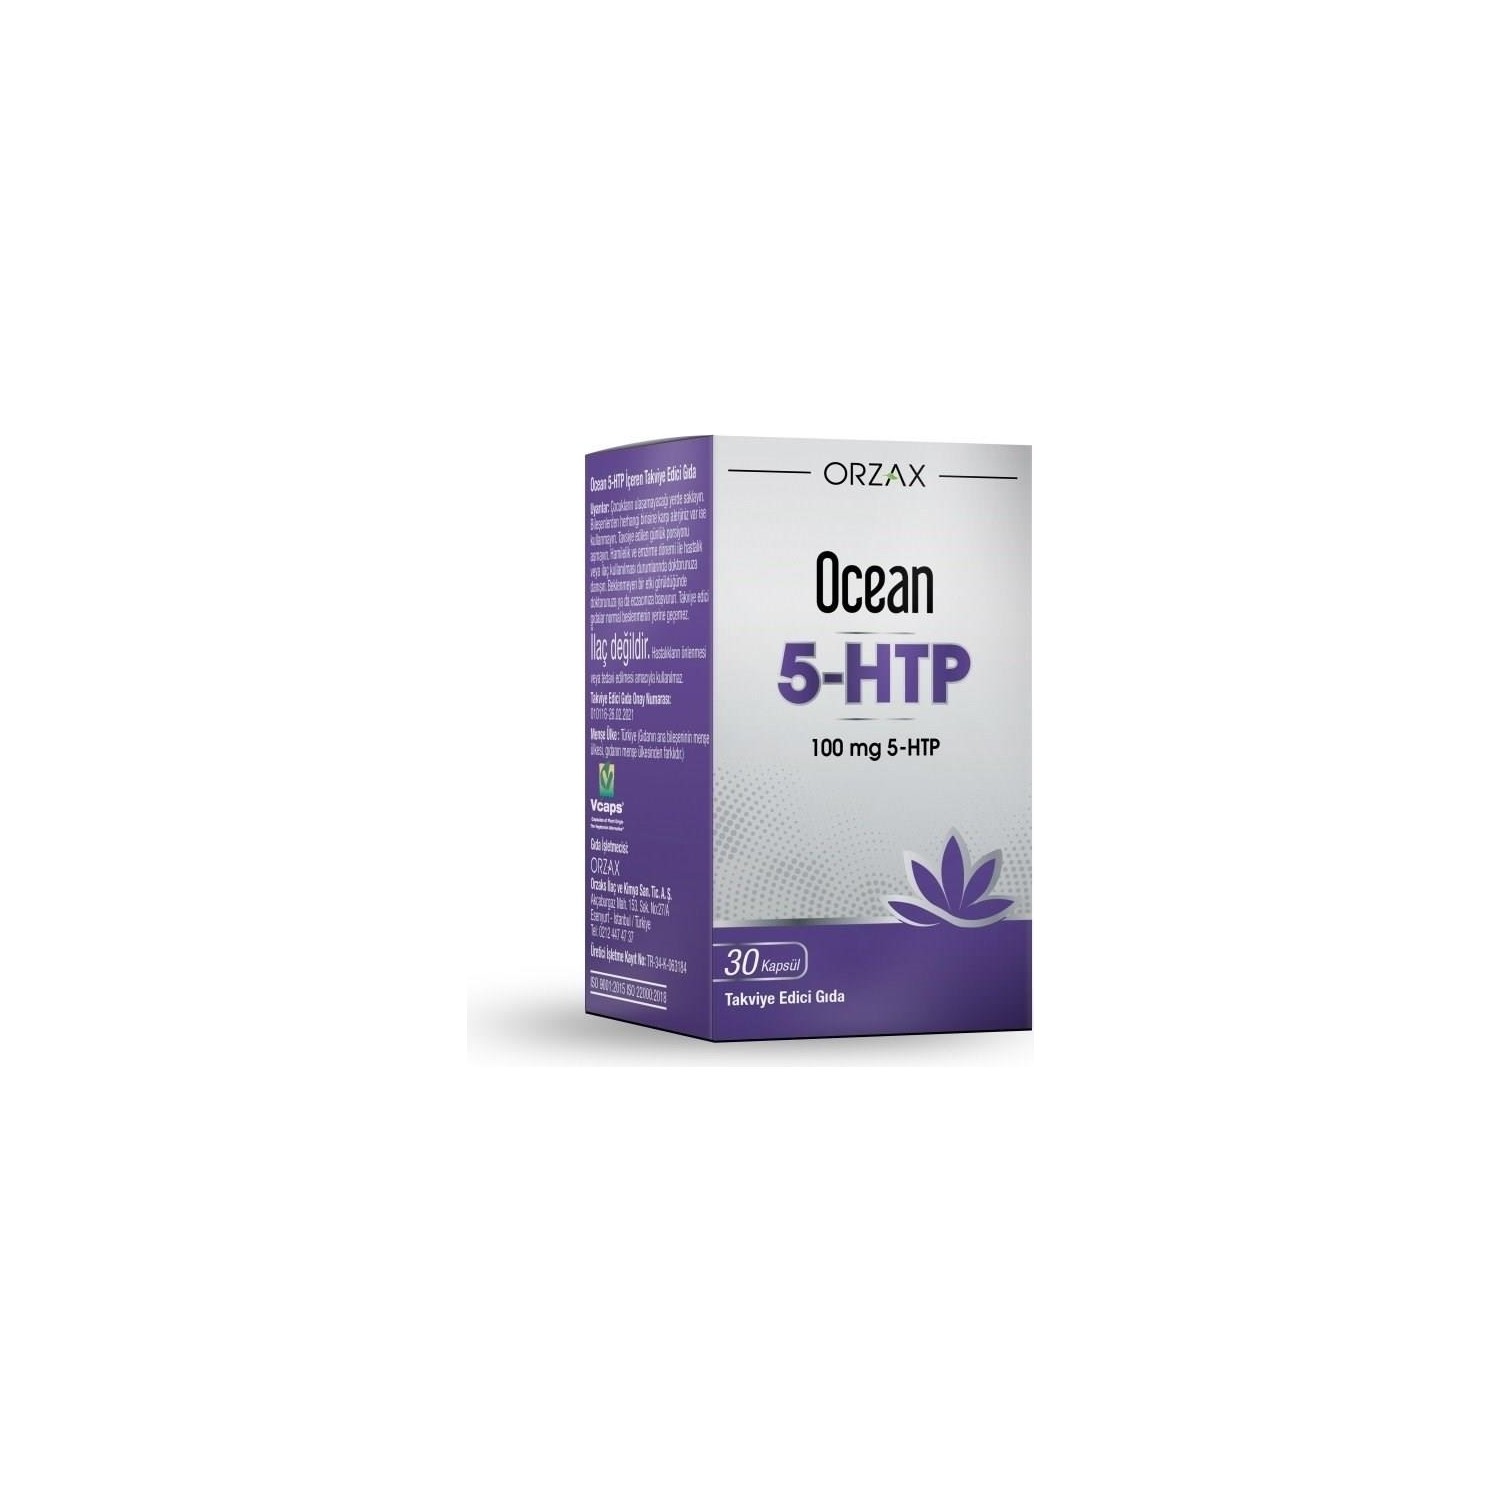 Пищевая добавка Ocean 5 Htp 30 капсул Dcn101, 100 мг пищевая добавка orzax 5 htp 100 мг 30 капсул